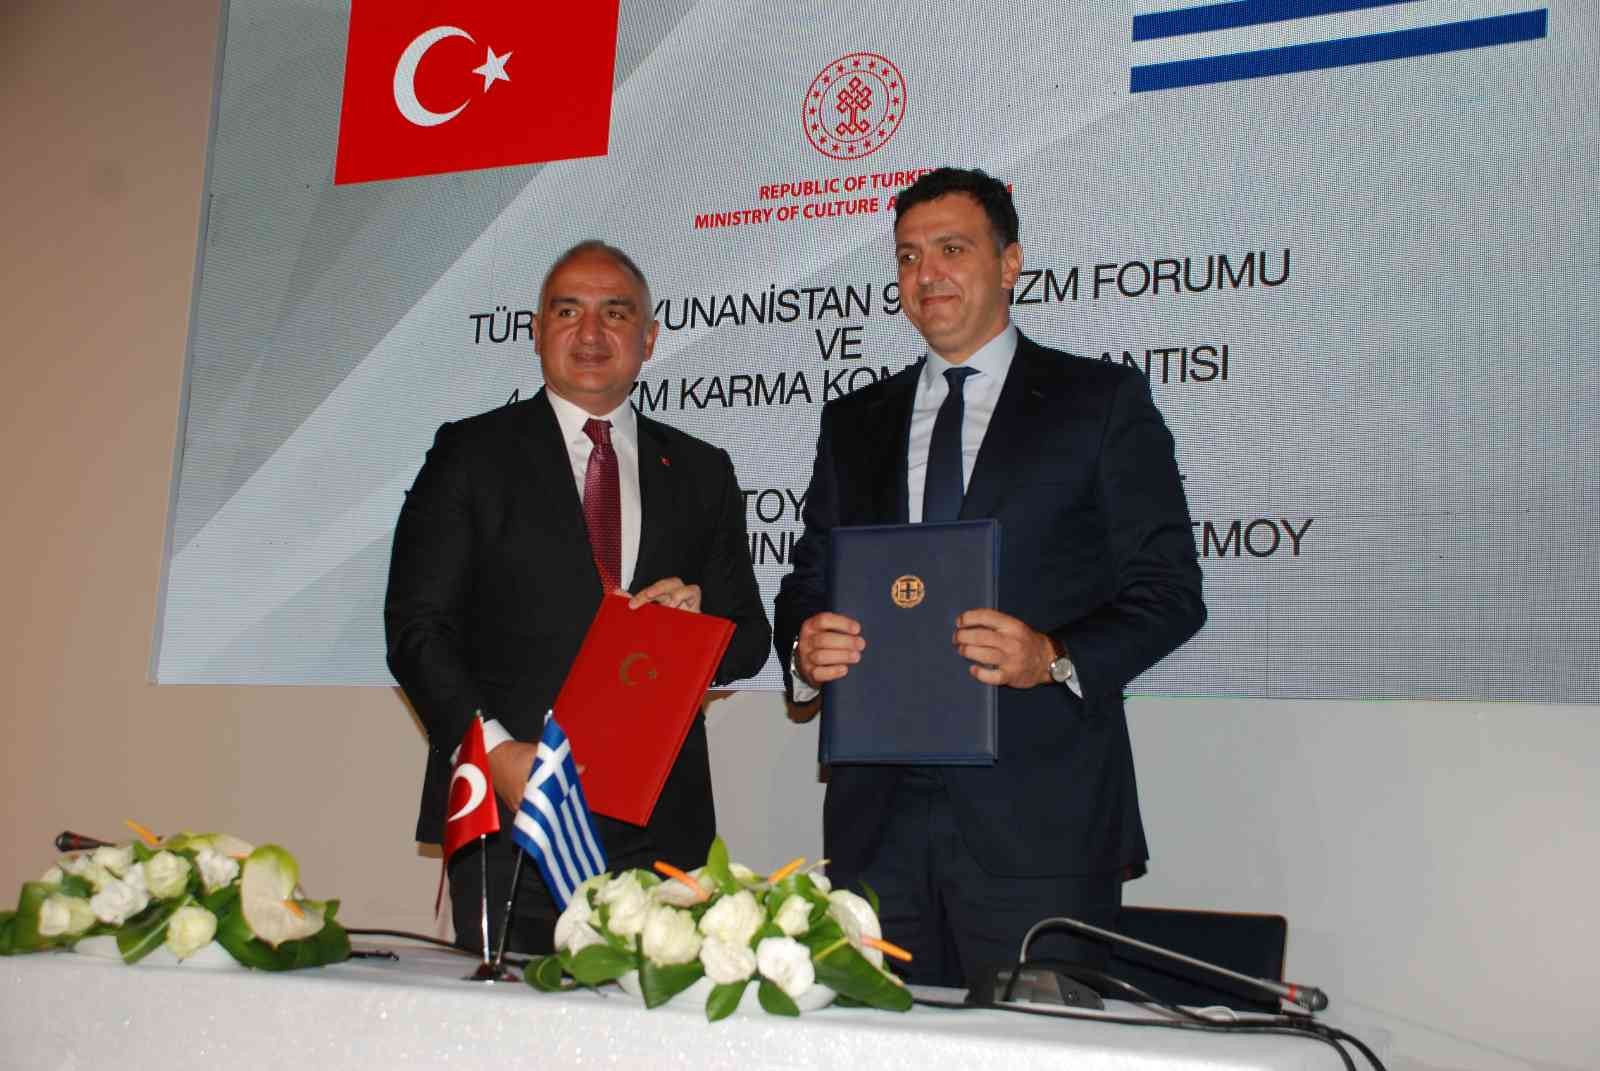 Türkiye ve Yunanistan, turizm işbirliği için bir araya geldi #izmir